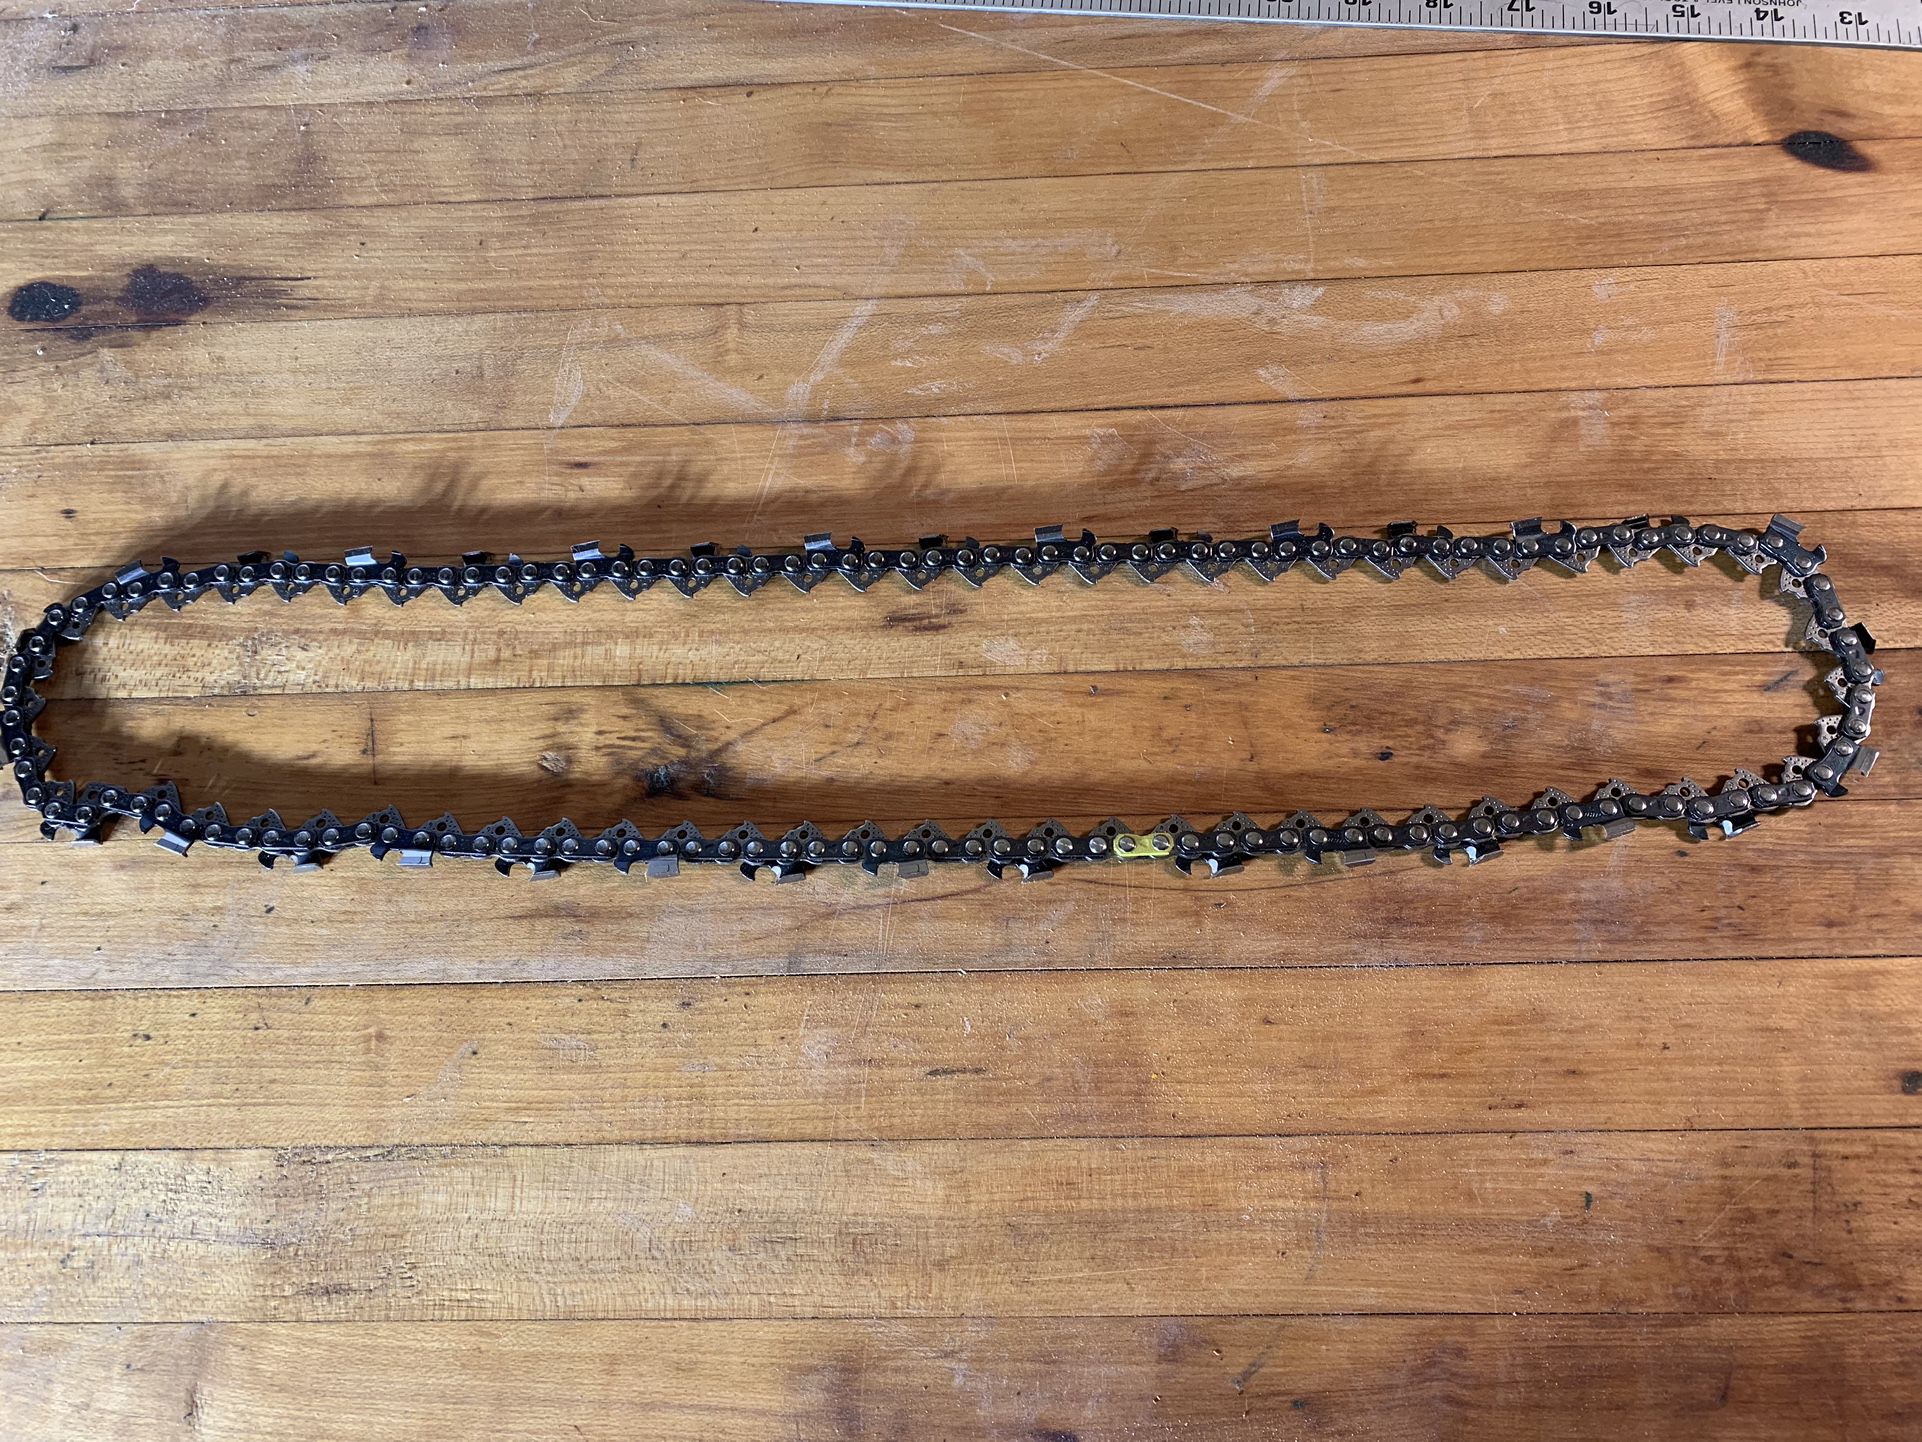 Stihl 16” Chainsaw Chain